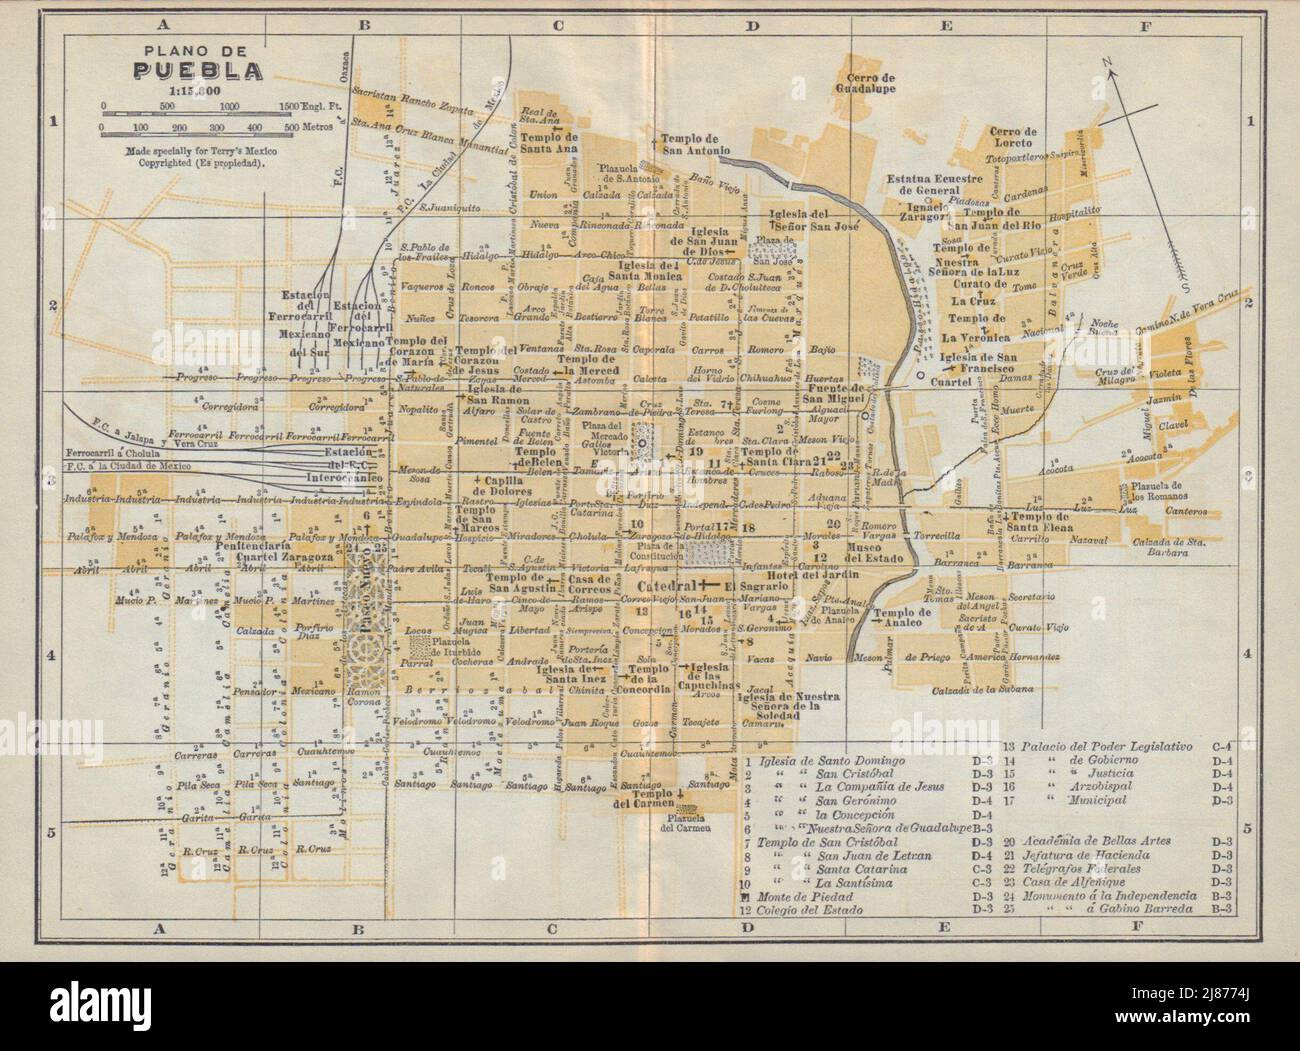 Plano de PUEBLA, Mexico. Mapa de la ciudad. City/town plan 1938 old Stock Photo